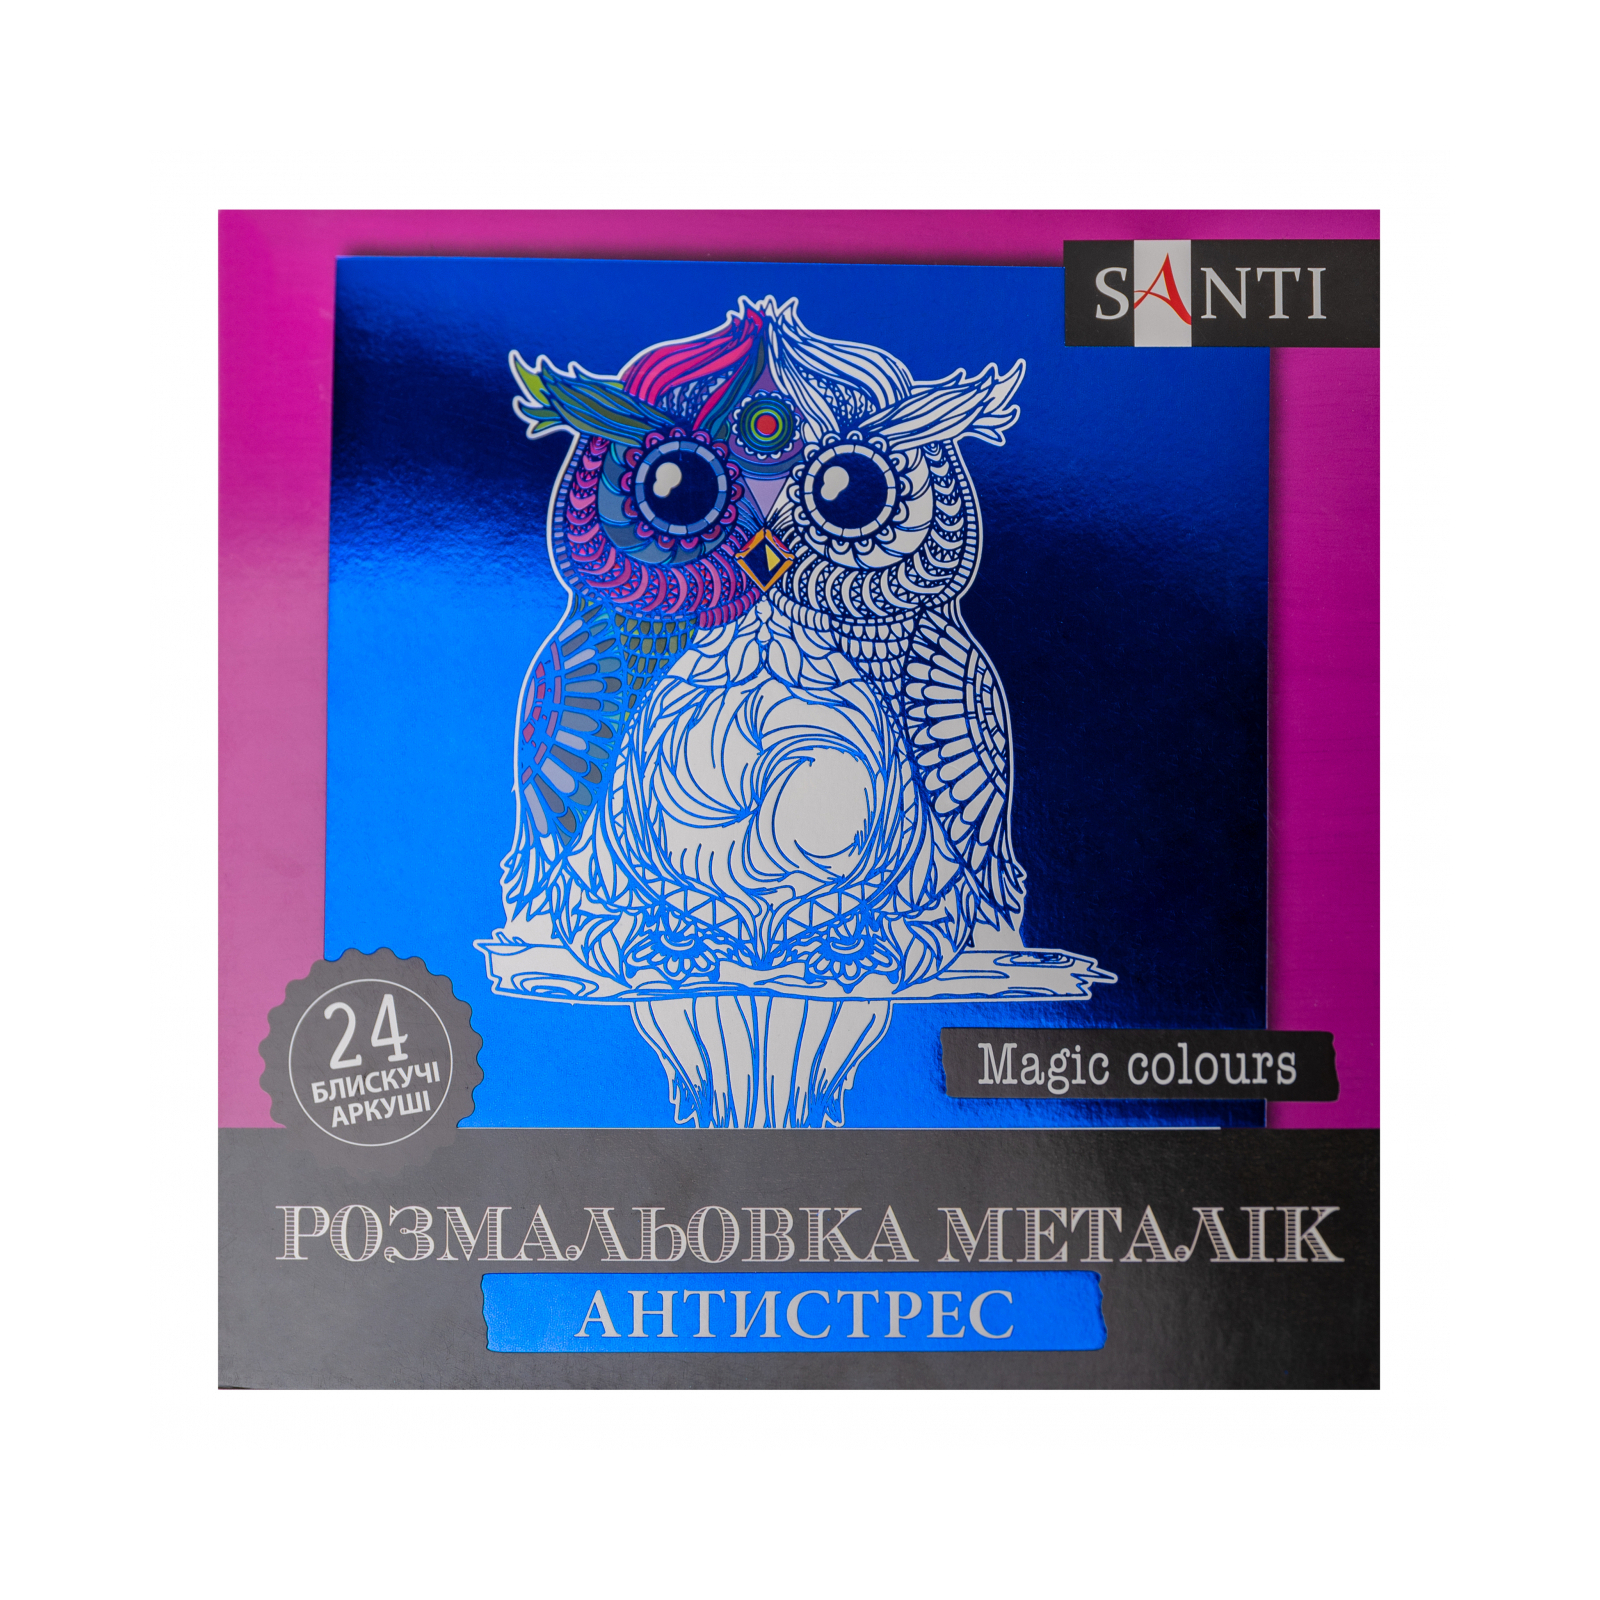 Набор для творчества Santi раскраска антистресс Magic colors металлик 24 листа (742955)